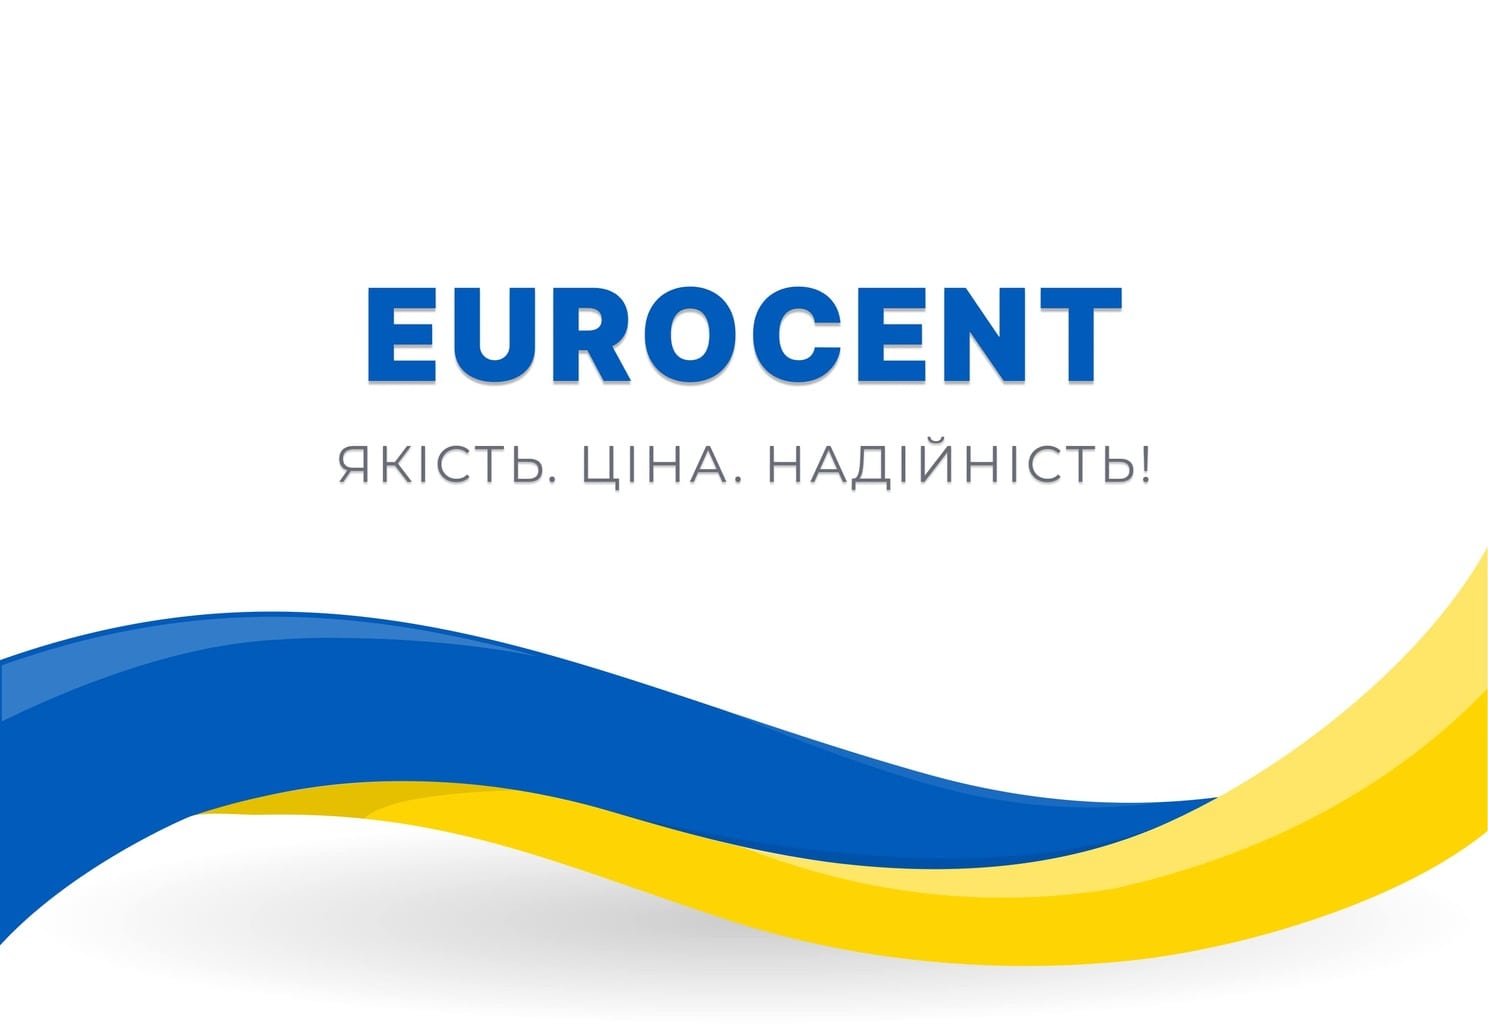 EuroCent